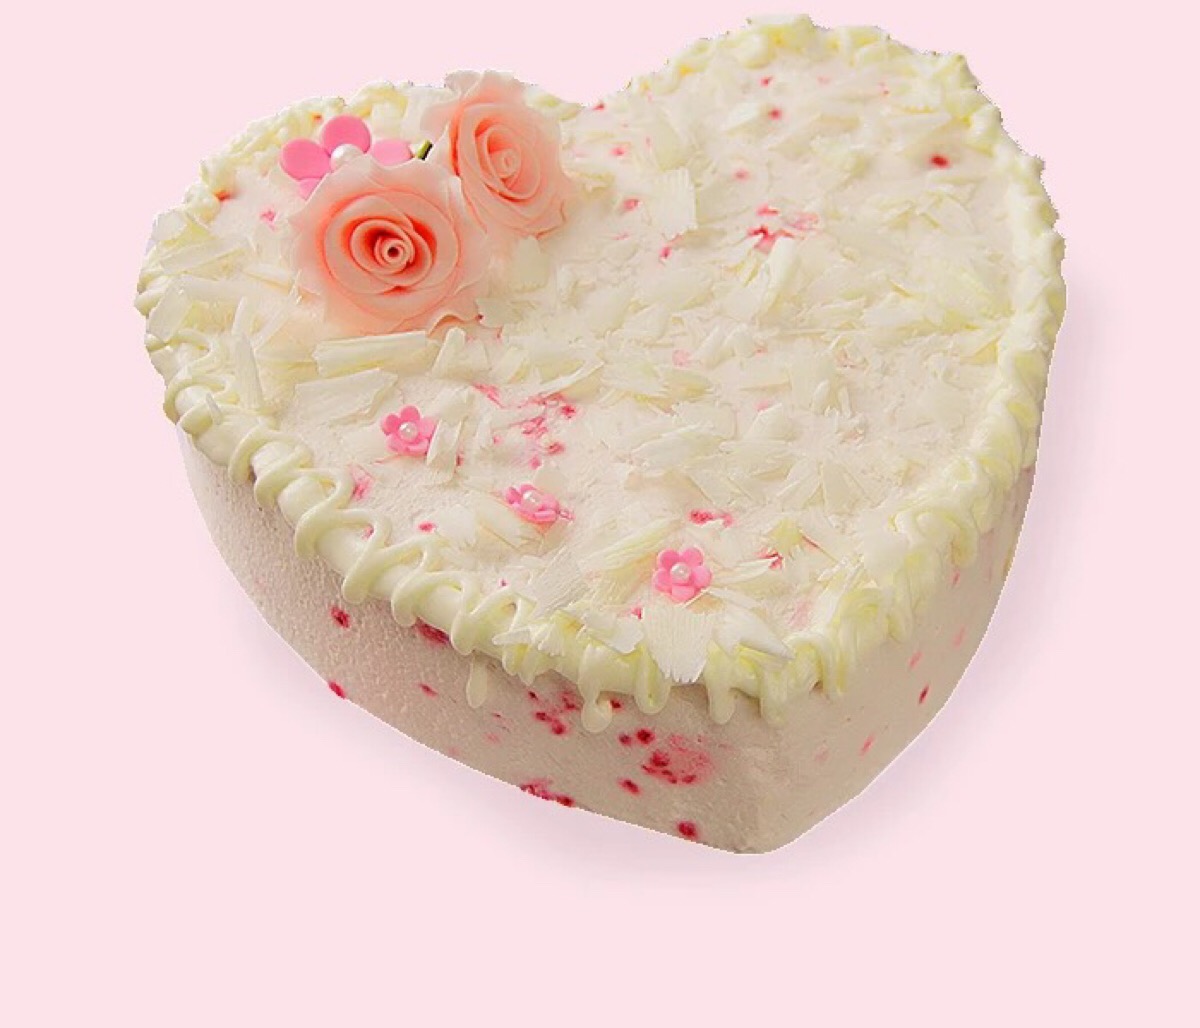 心形蛋糕 情侣树莓